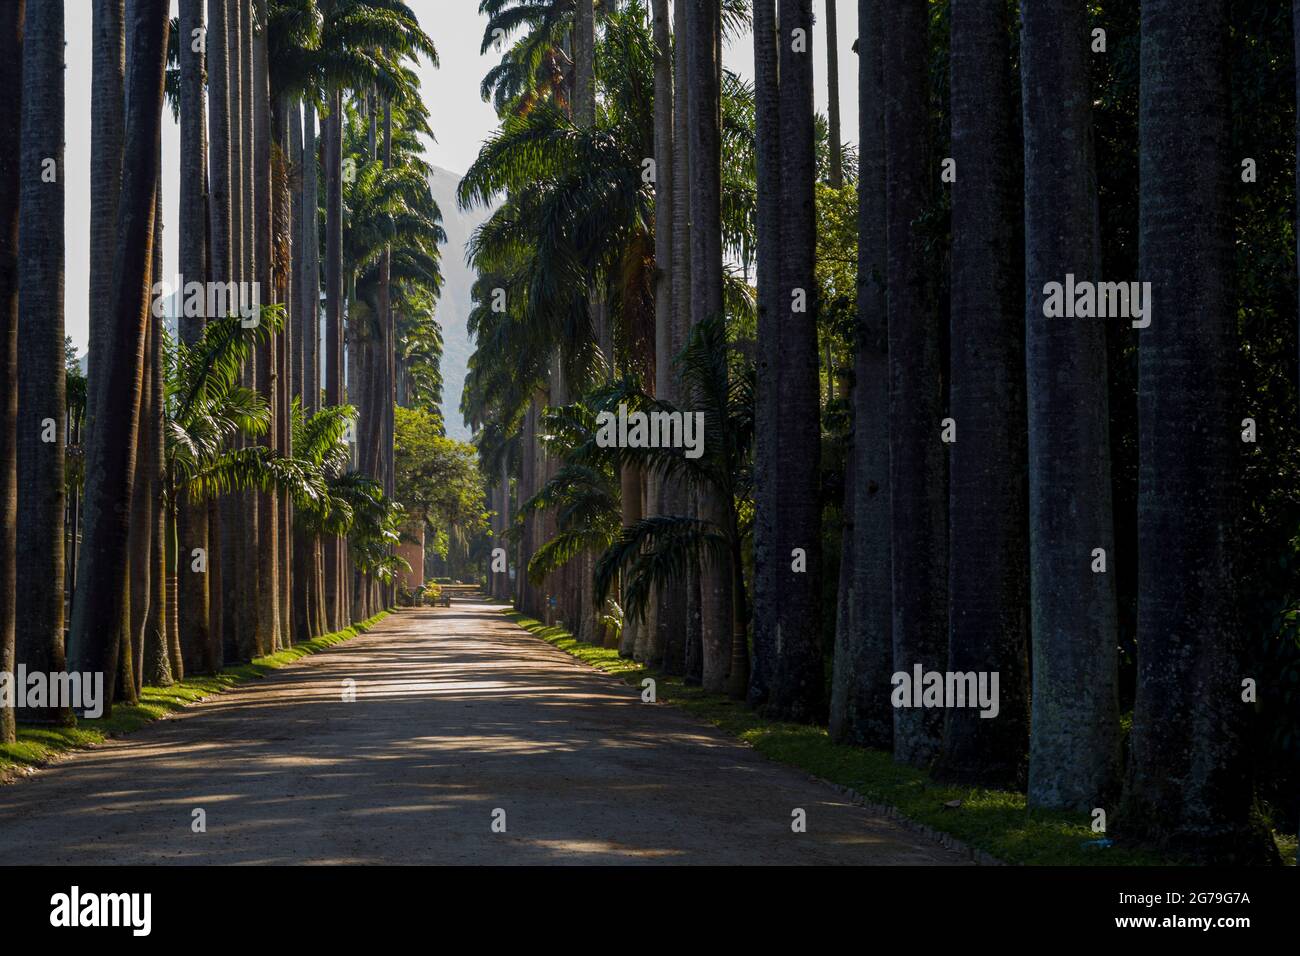 Avenida de palmeras reales (palmeras Roystonea oleracea) en el Jardín Botánico Jardim Botanico, ubicado en el distrito de Jardim Botânico en la Zona Sur de Río de Janeiro, Brasil Foto de stock